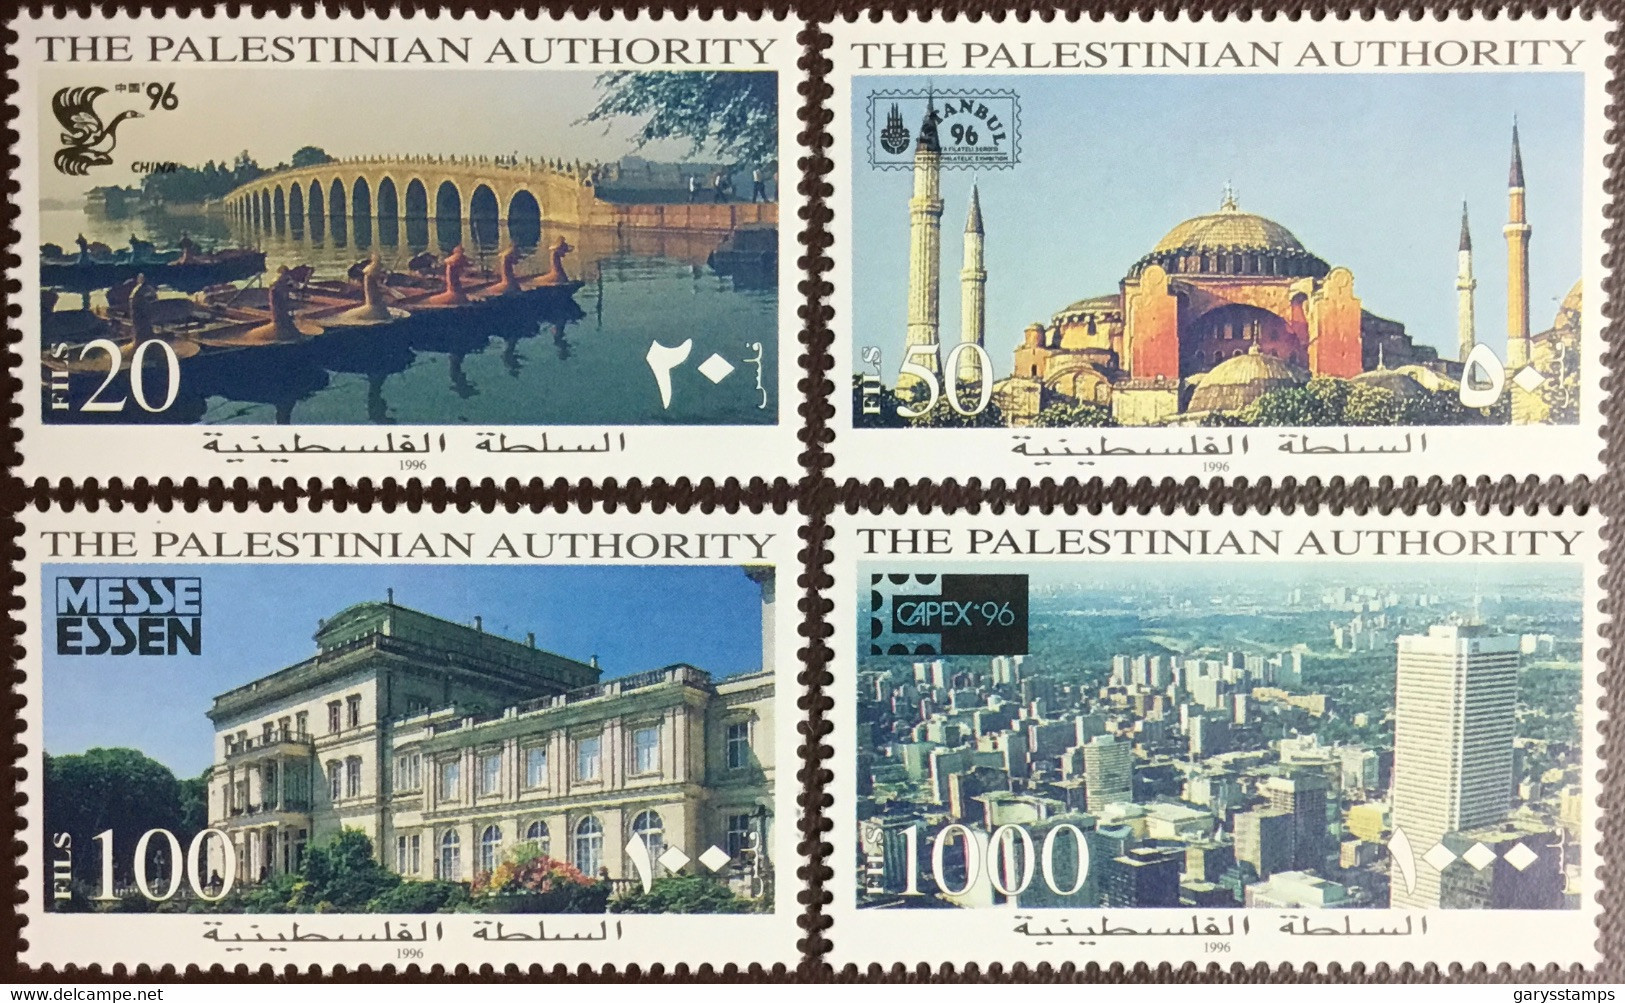 Palestine 1996 Stamp Exhibitions MNH - Palestine